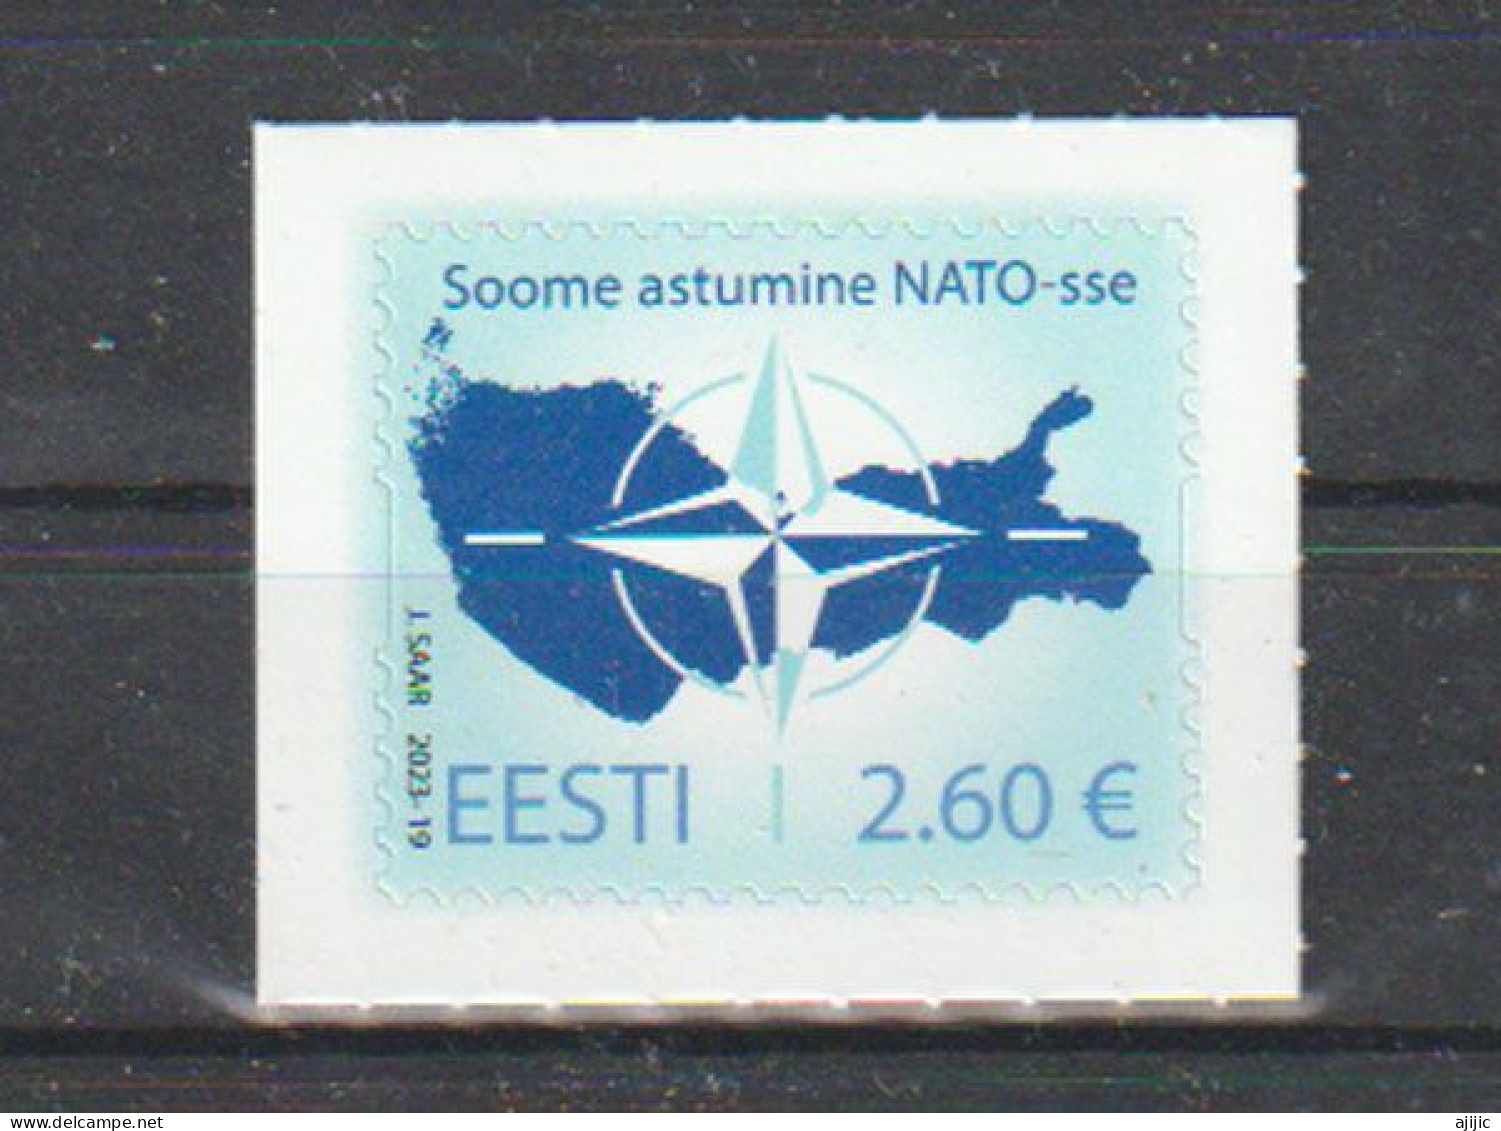 2023.Adhésion De La Finlande à L'OTAN. Timbre Neuf ** Adhésif Haute Faciale D'Estonie - Unused Stamps